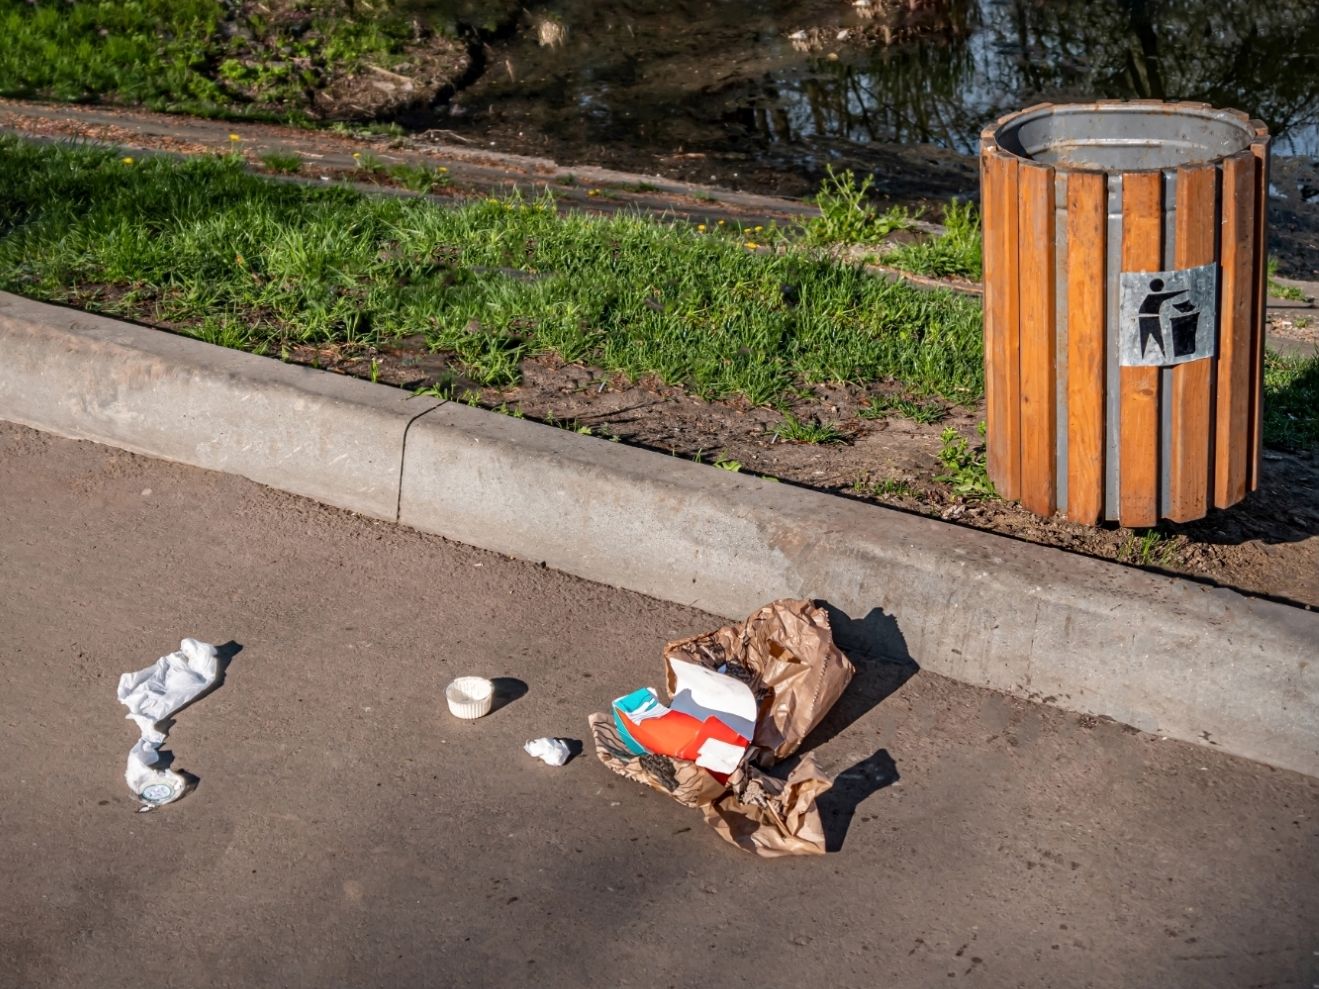 Trotz vieler Entsorgungsmöglichkeiten landet Müll oft genug einfach auf der Straße